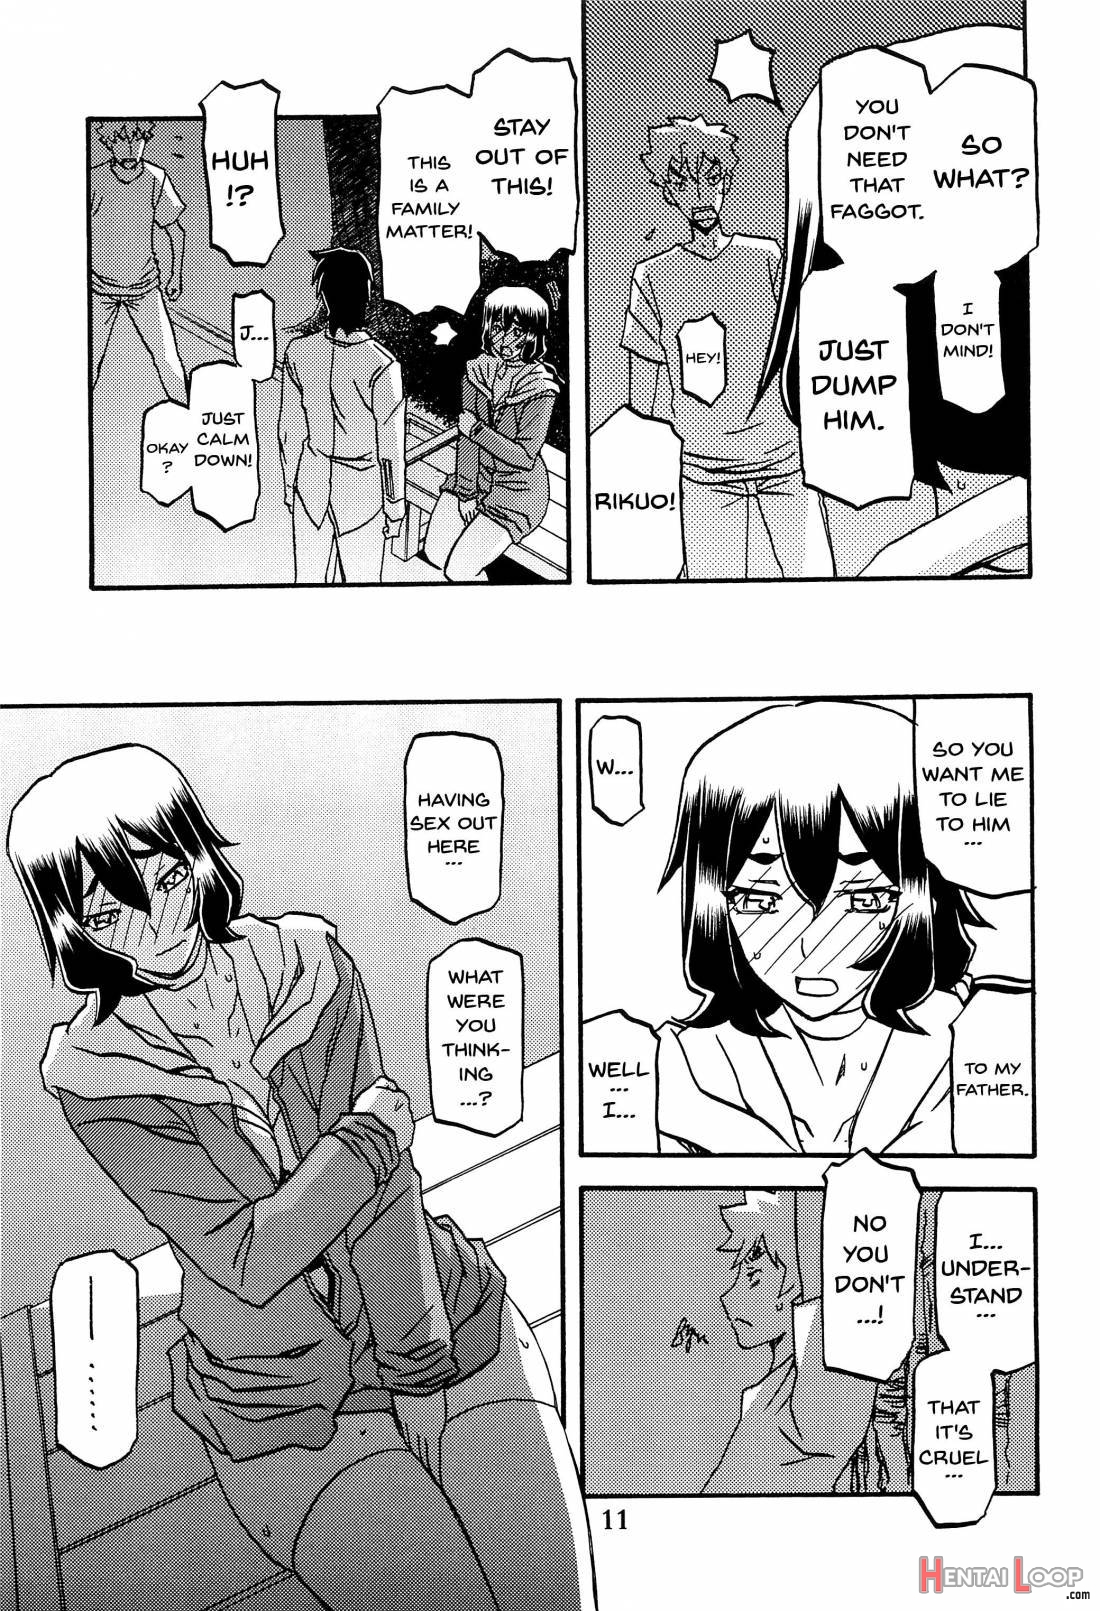 Akebi no Mi – Chizuru AFTER page 10